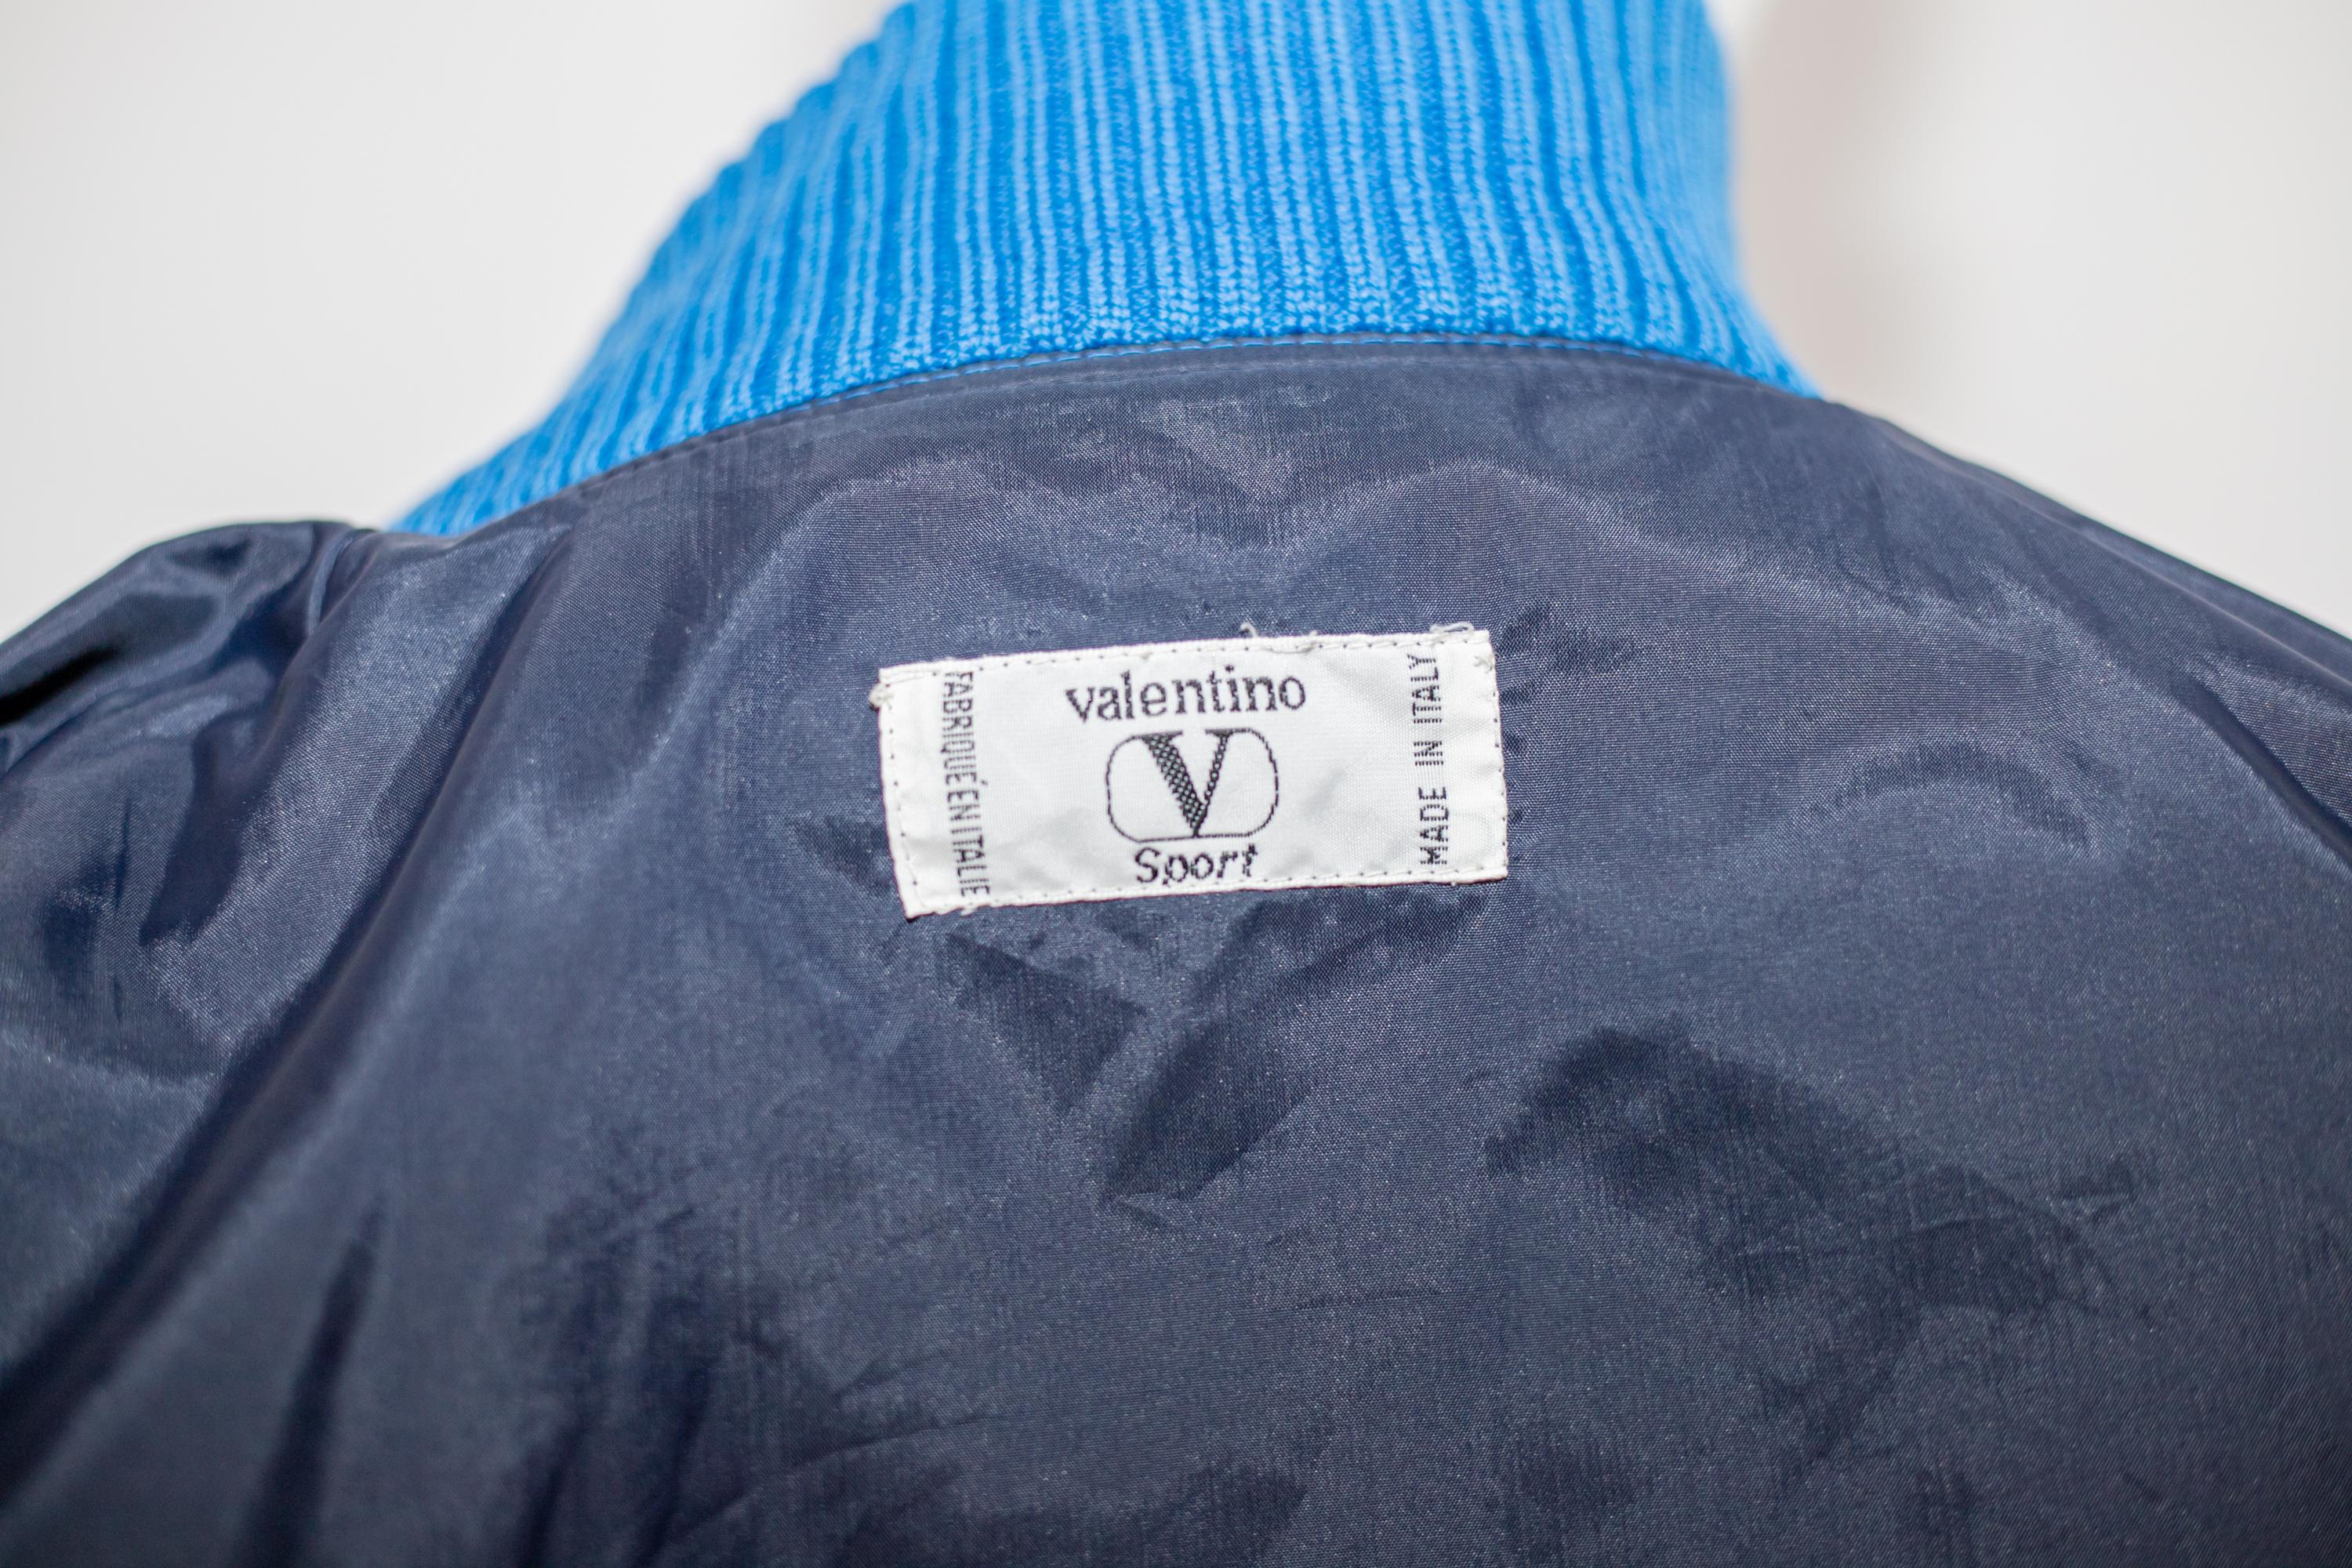 Wunderschöne Bomberjacke aus Baumwolle, entworfen von Valentino in den 1990er Jahren. Die Jacke zeigt das Branding von Valentino, sowohl auf der Außenseite in Höhe des Herzens, als auch auf der Innenseite aufgenäht.
Die Bomberjacke ist komplett aus